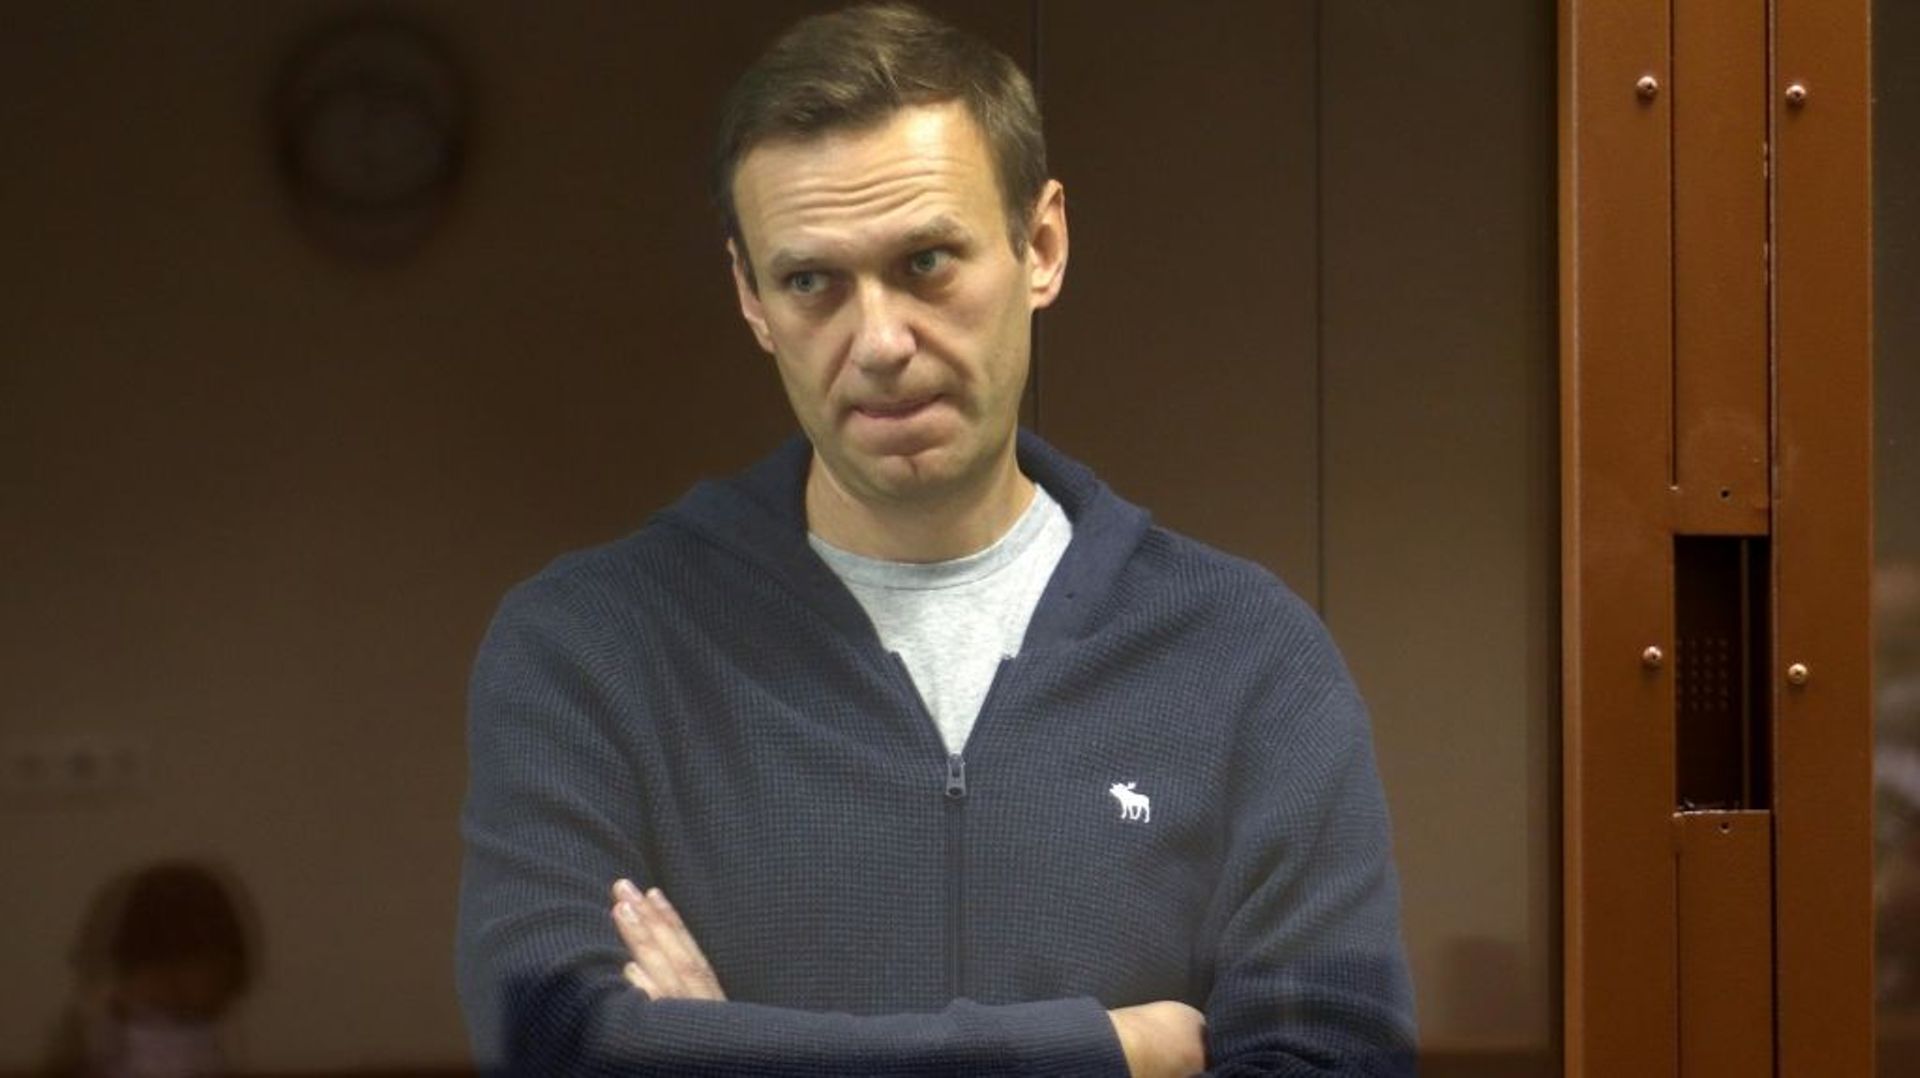 Photo de l'opposant russe Alexeï Navalny, fournie par le tribunal de Moscou chargé de le juger pour diffamation, le 12 février 2021